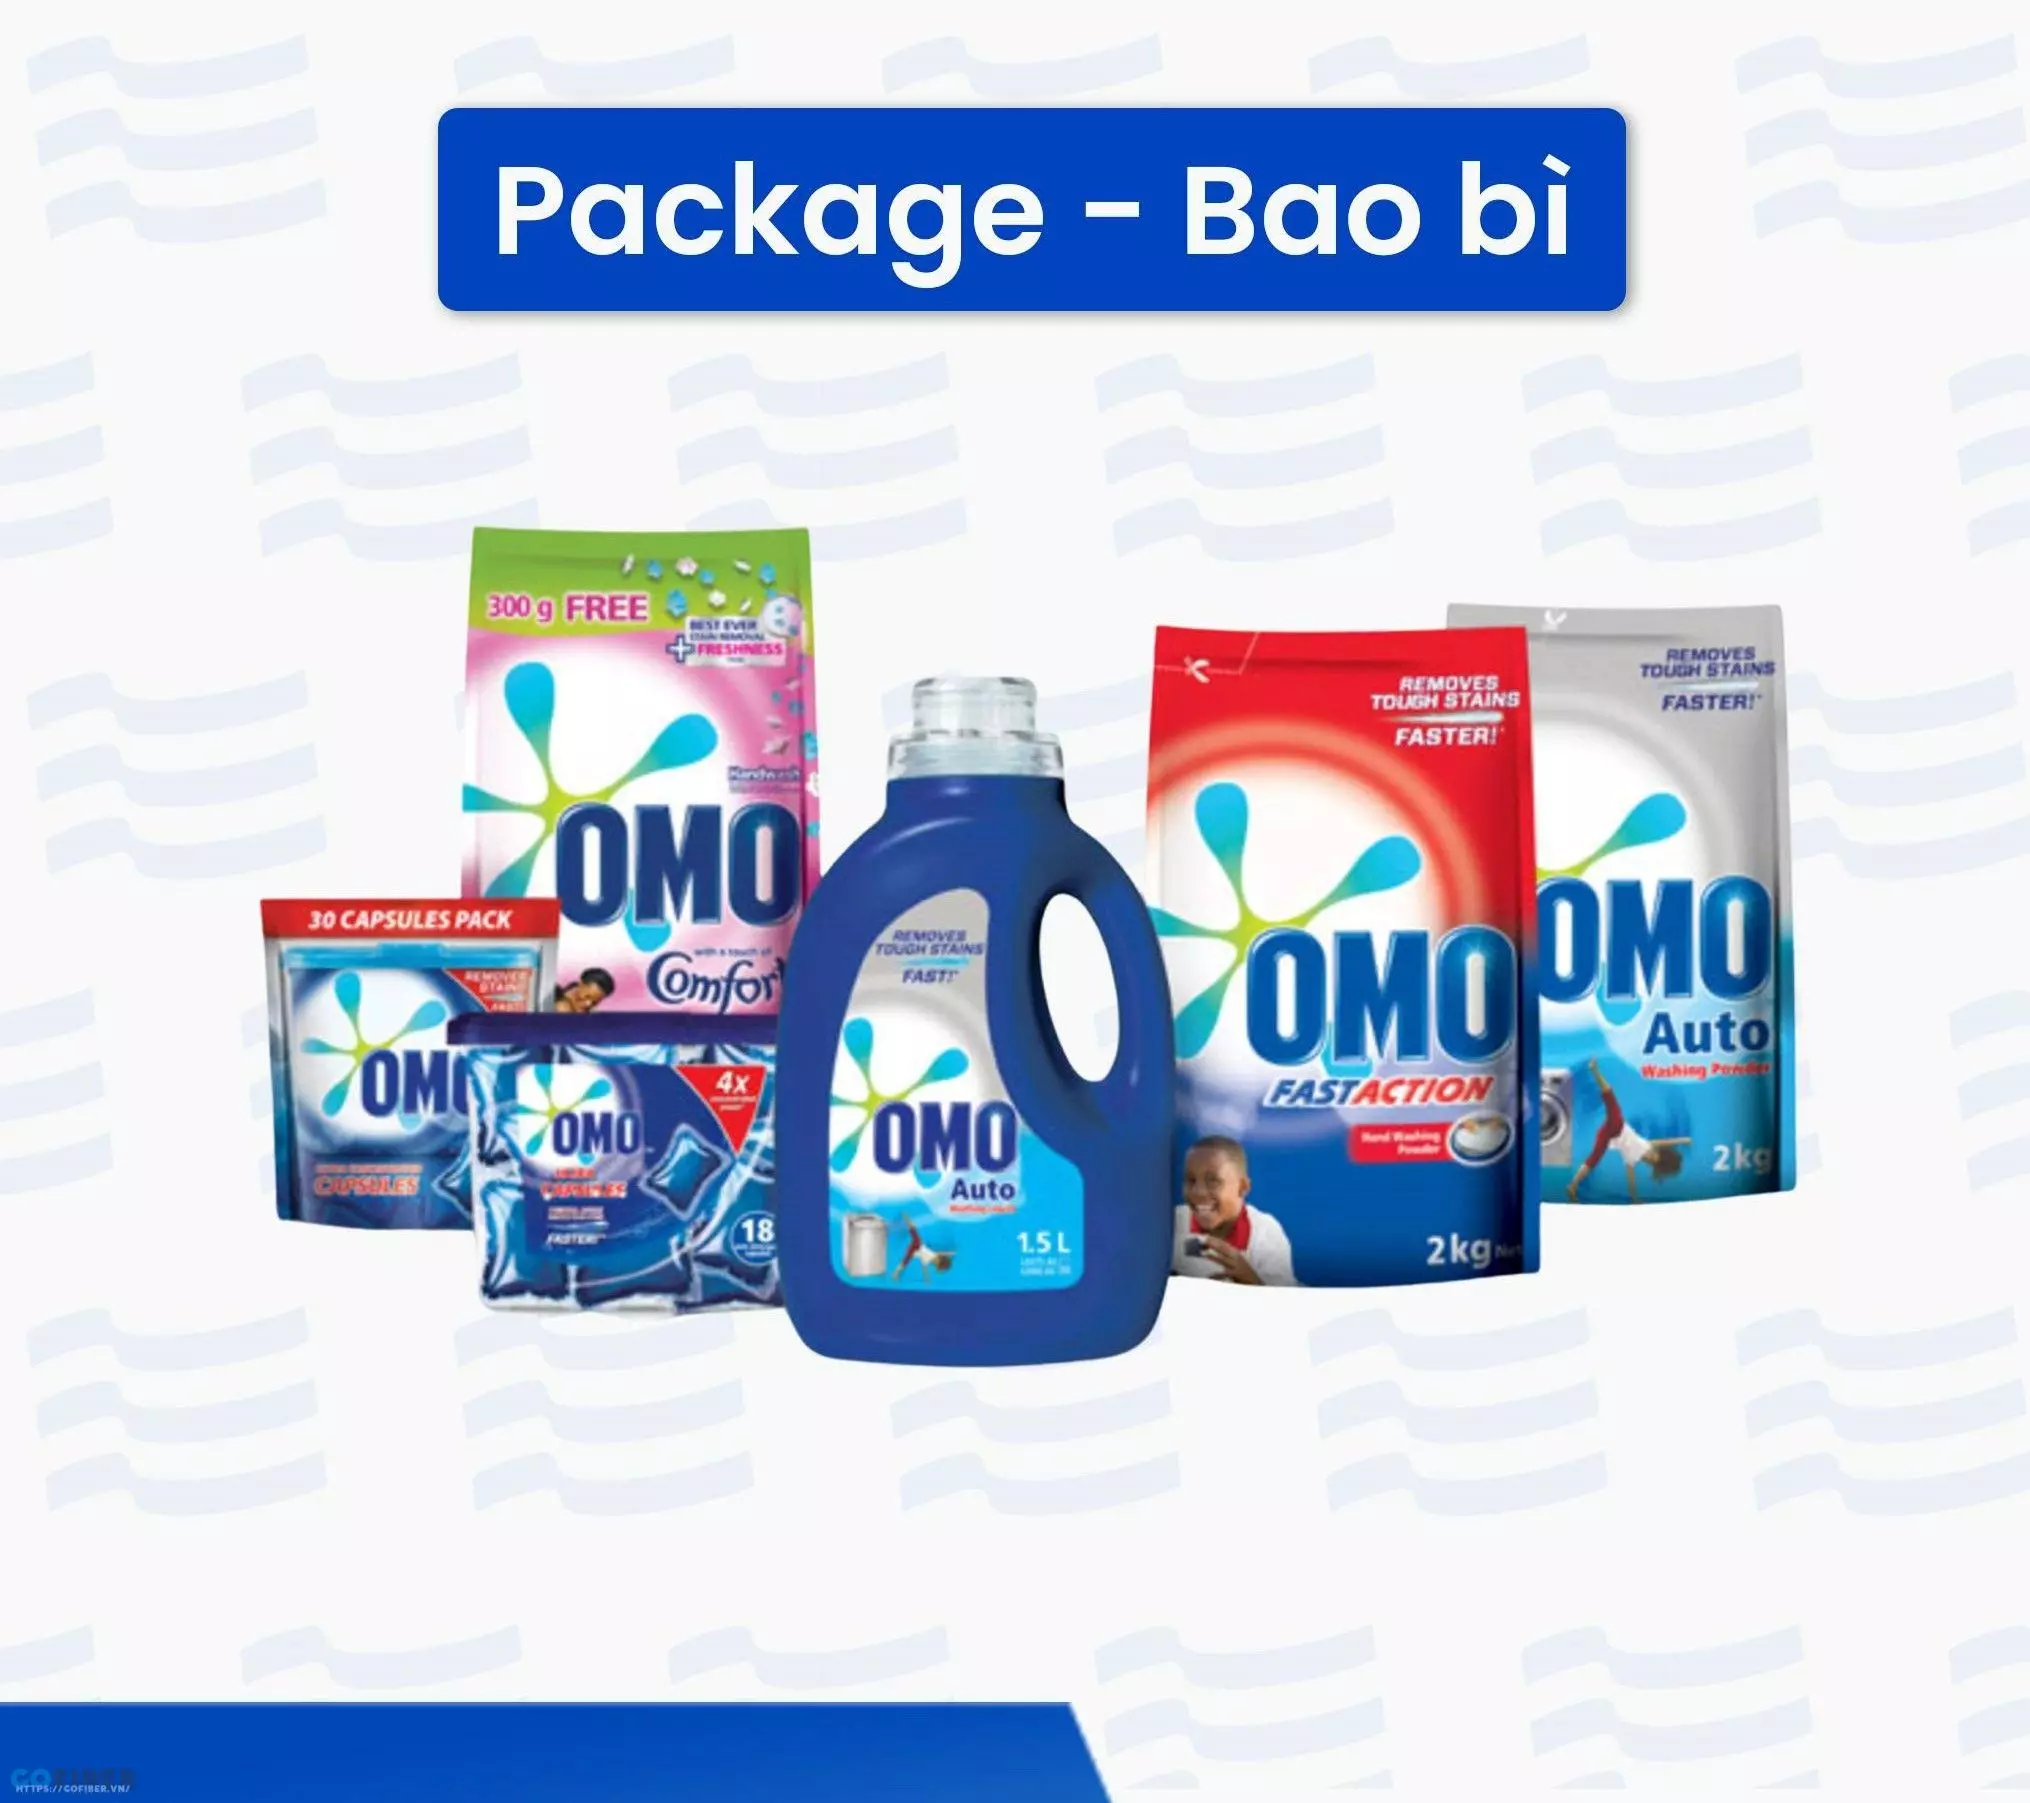 OMO là thương hiệu triển khai mô hình 6Ps trong marketing hiệu quả